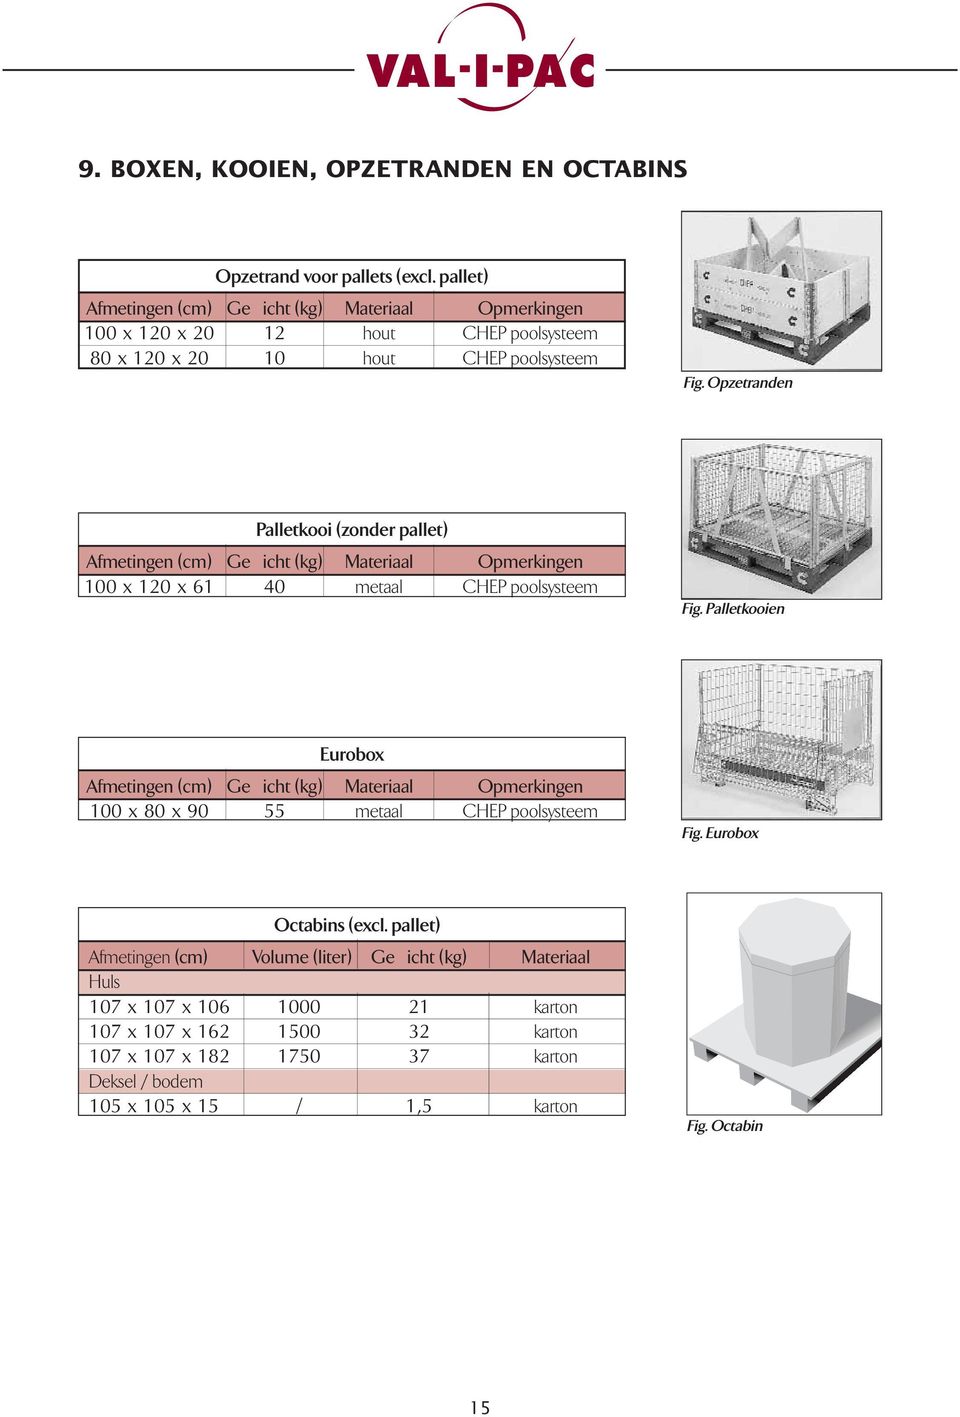 Opzetranden Palletkooi (zonder pallet) Afmetingen (cm) Gewicht (kg) Materiaal Opmerkingen 100 x 120 x 61 40 metaal CHEP poolsysteem Fig.